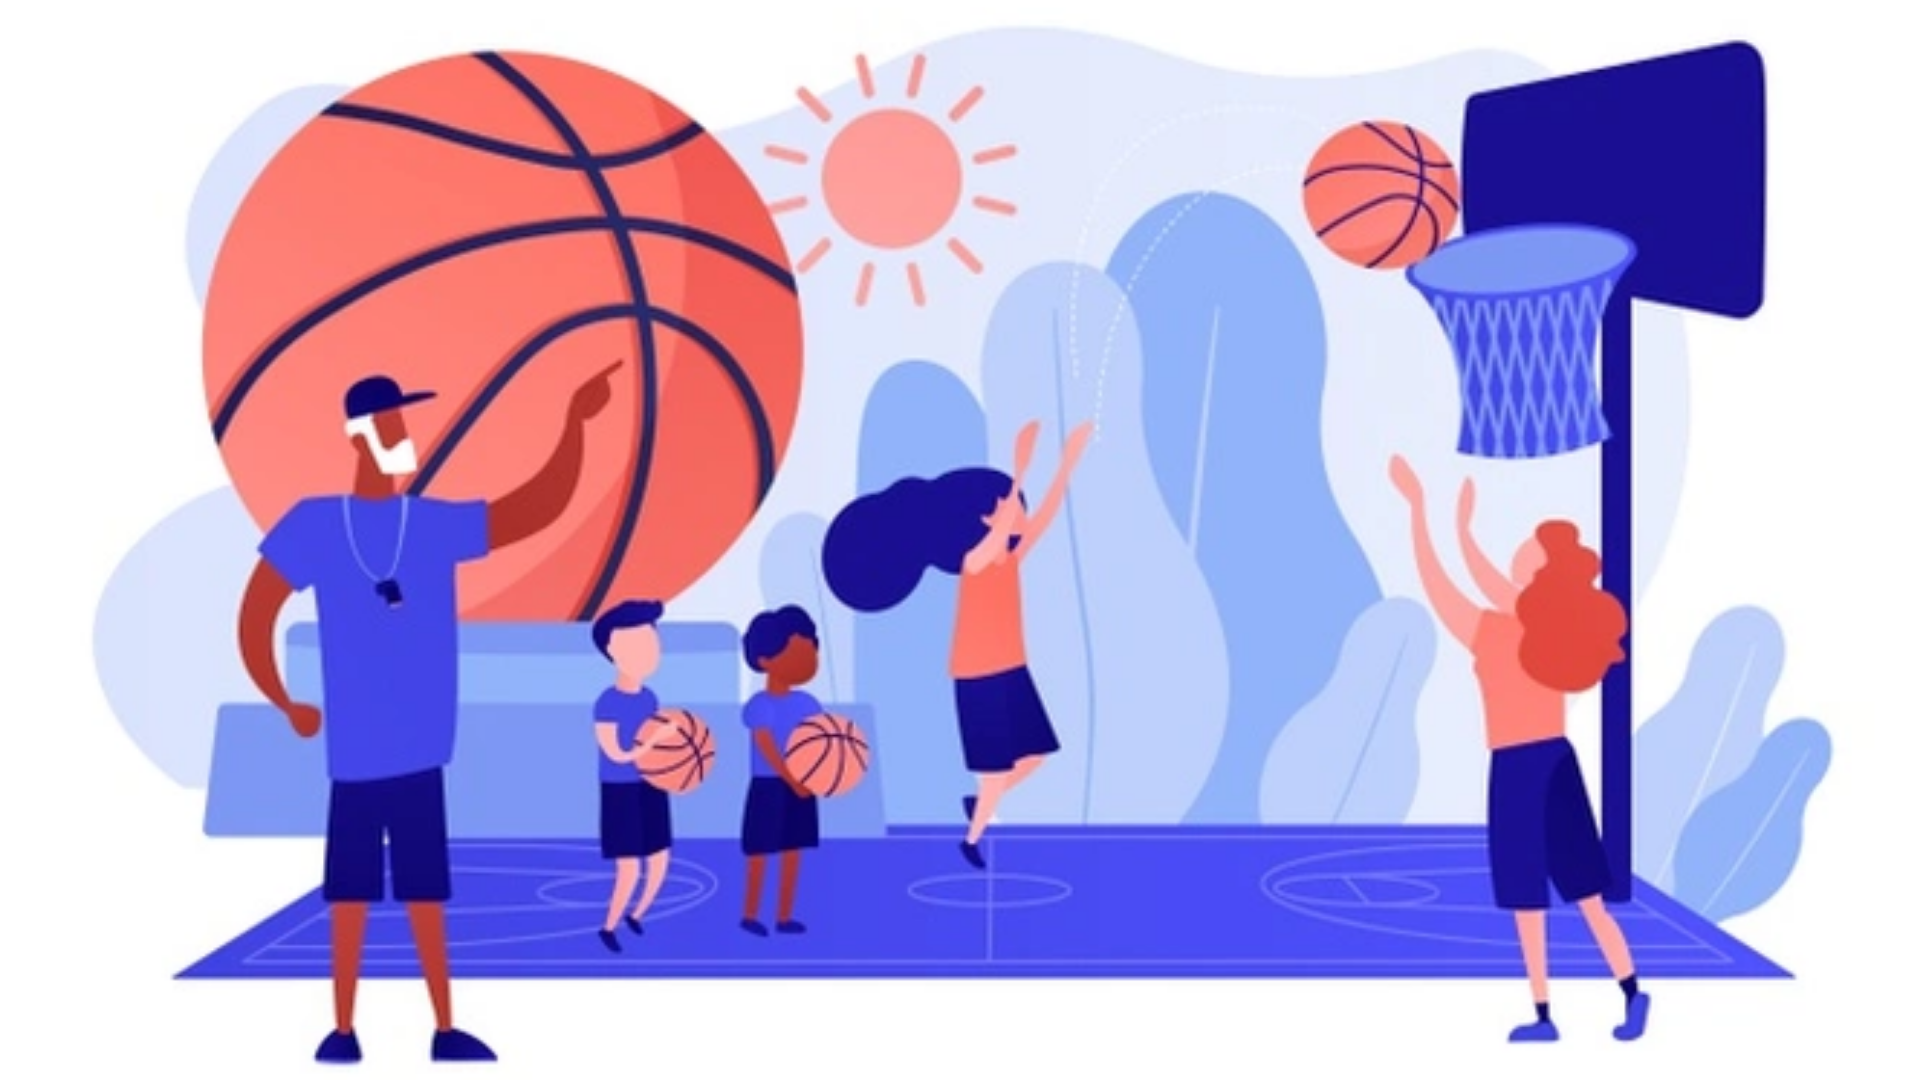 Basketbol antrenmanı yapan çocukların görseli.